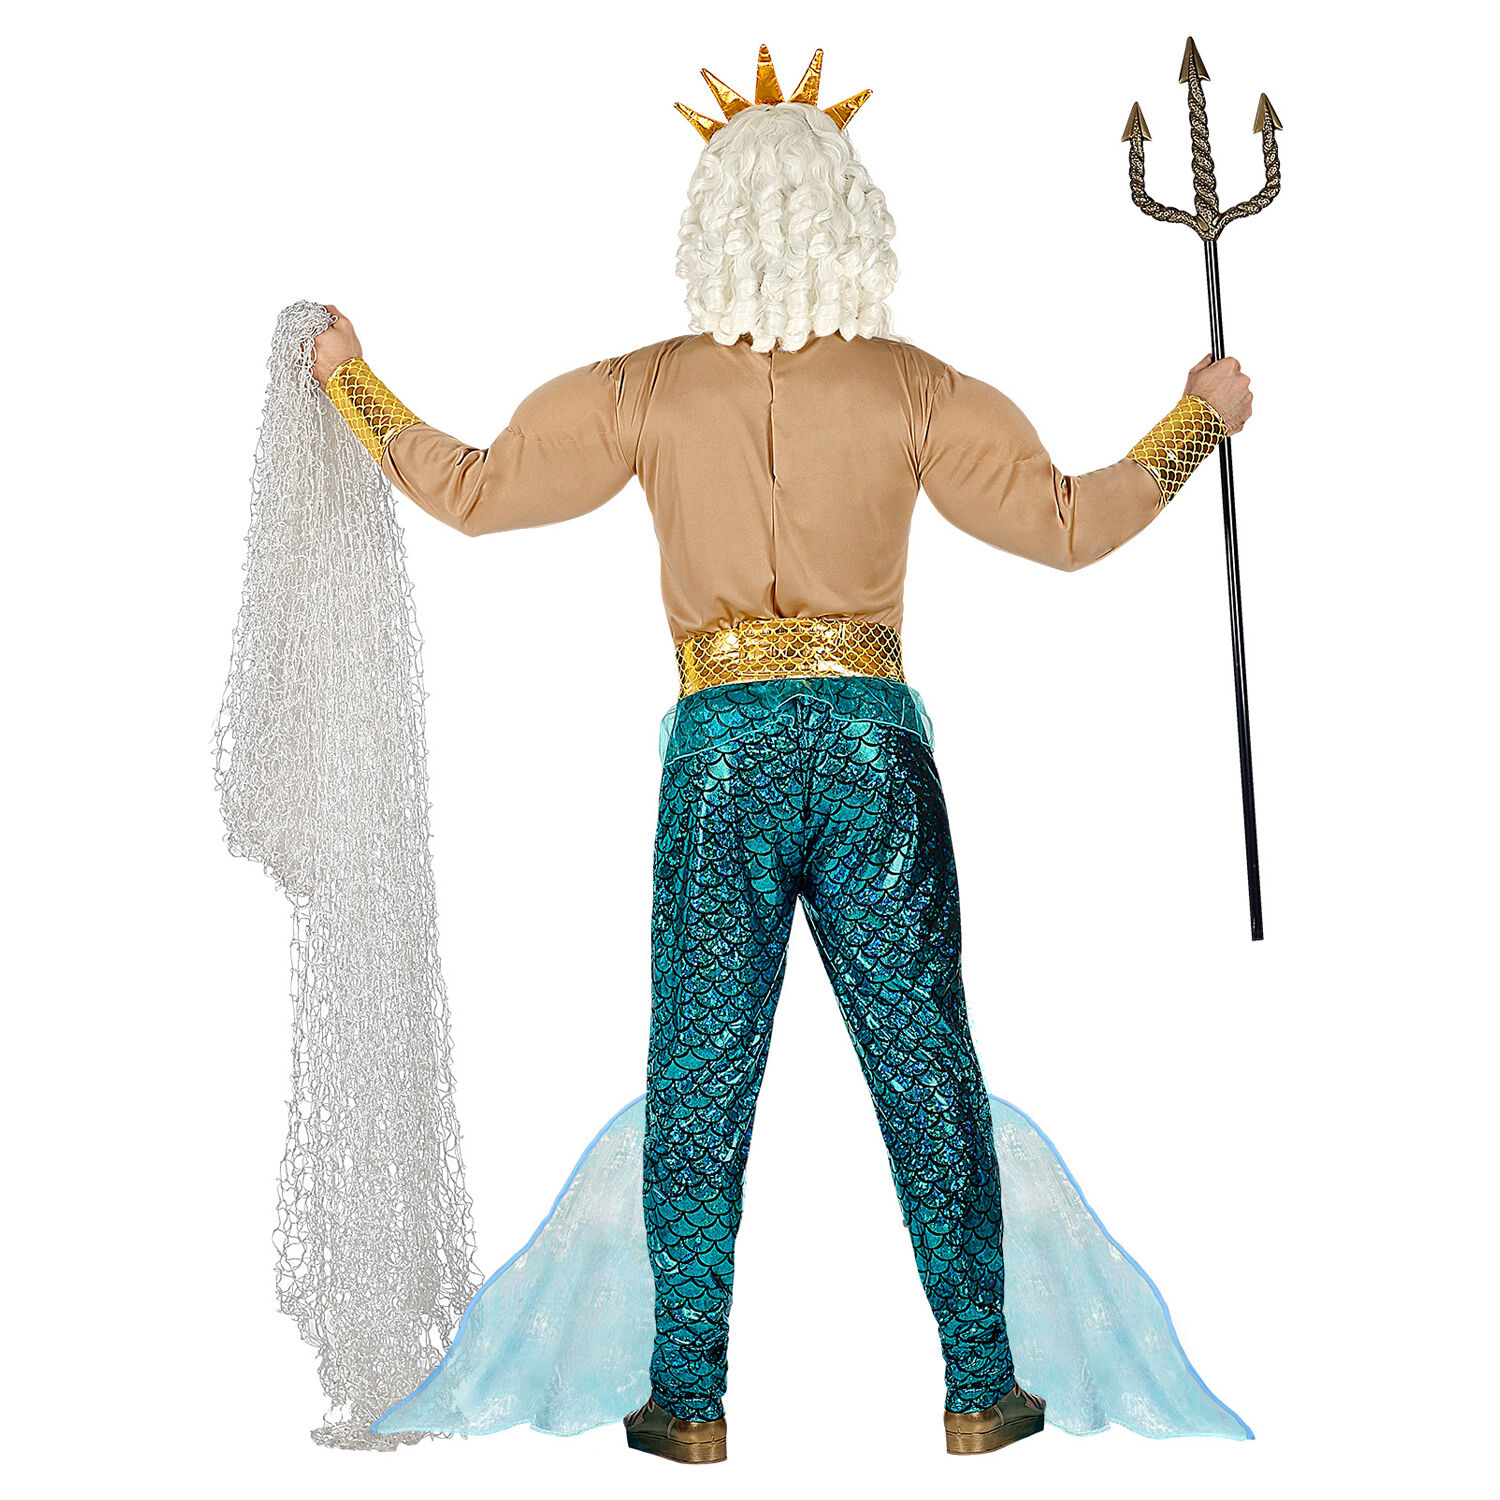 NEU Herren-Kostüm Poseidon / Wassermann, Muskelshirt mit Hose, Gürtel, Armschmuck und Krone, Gr. S Bild 3